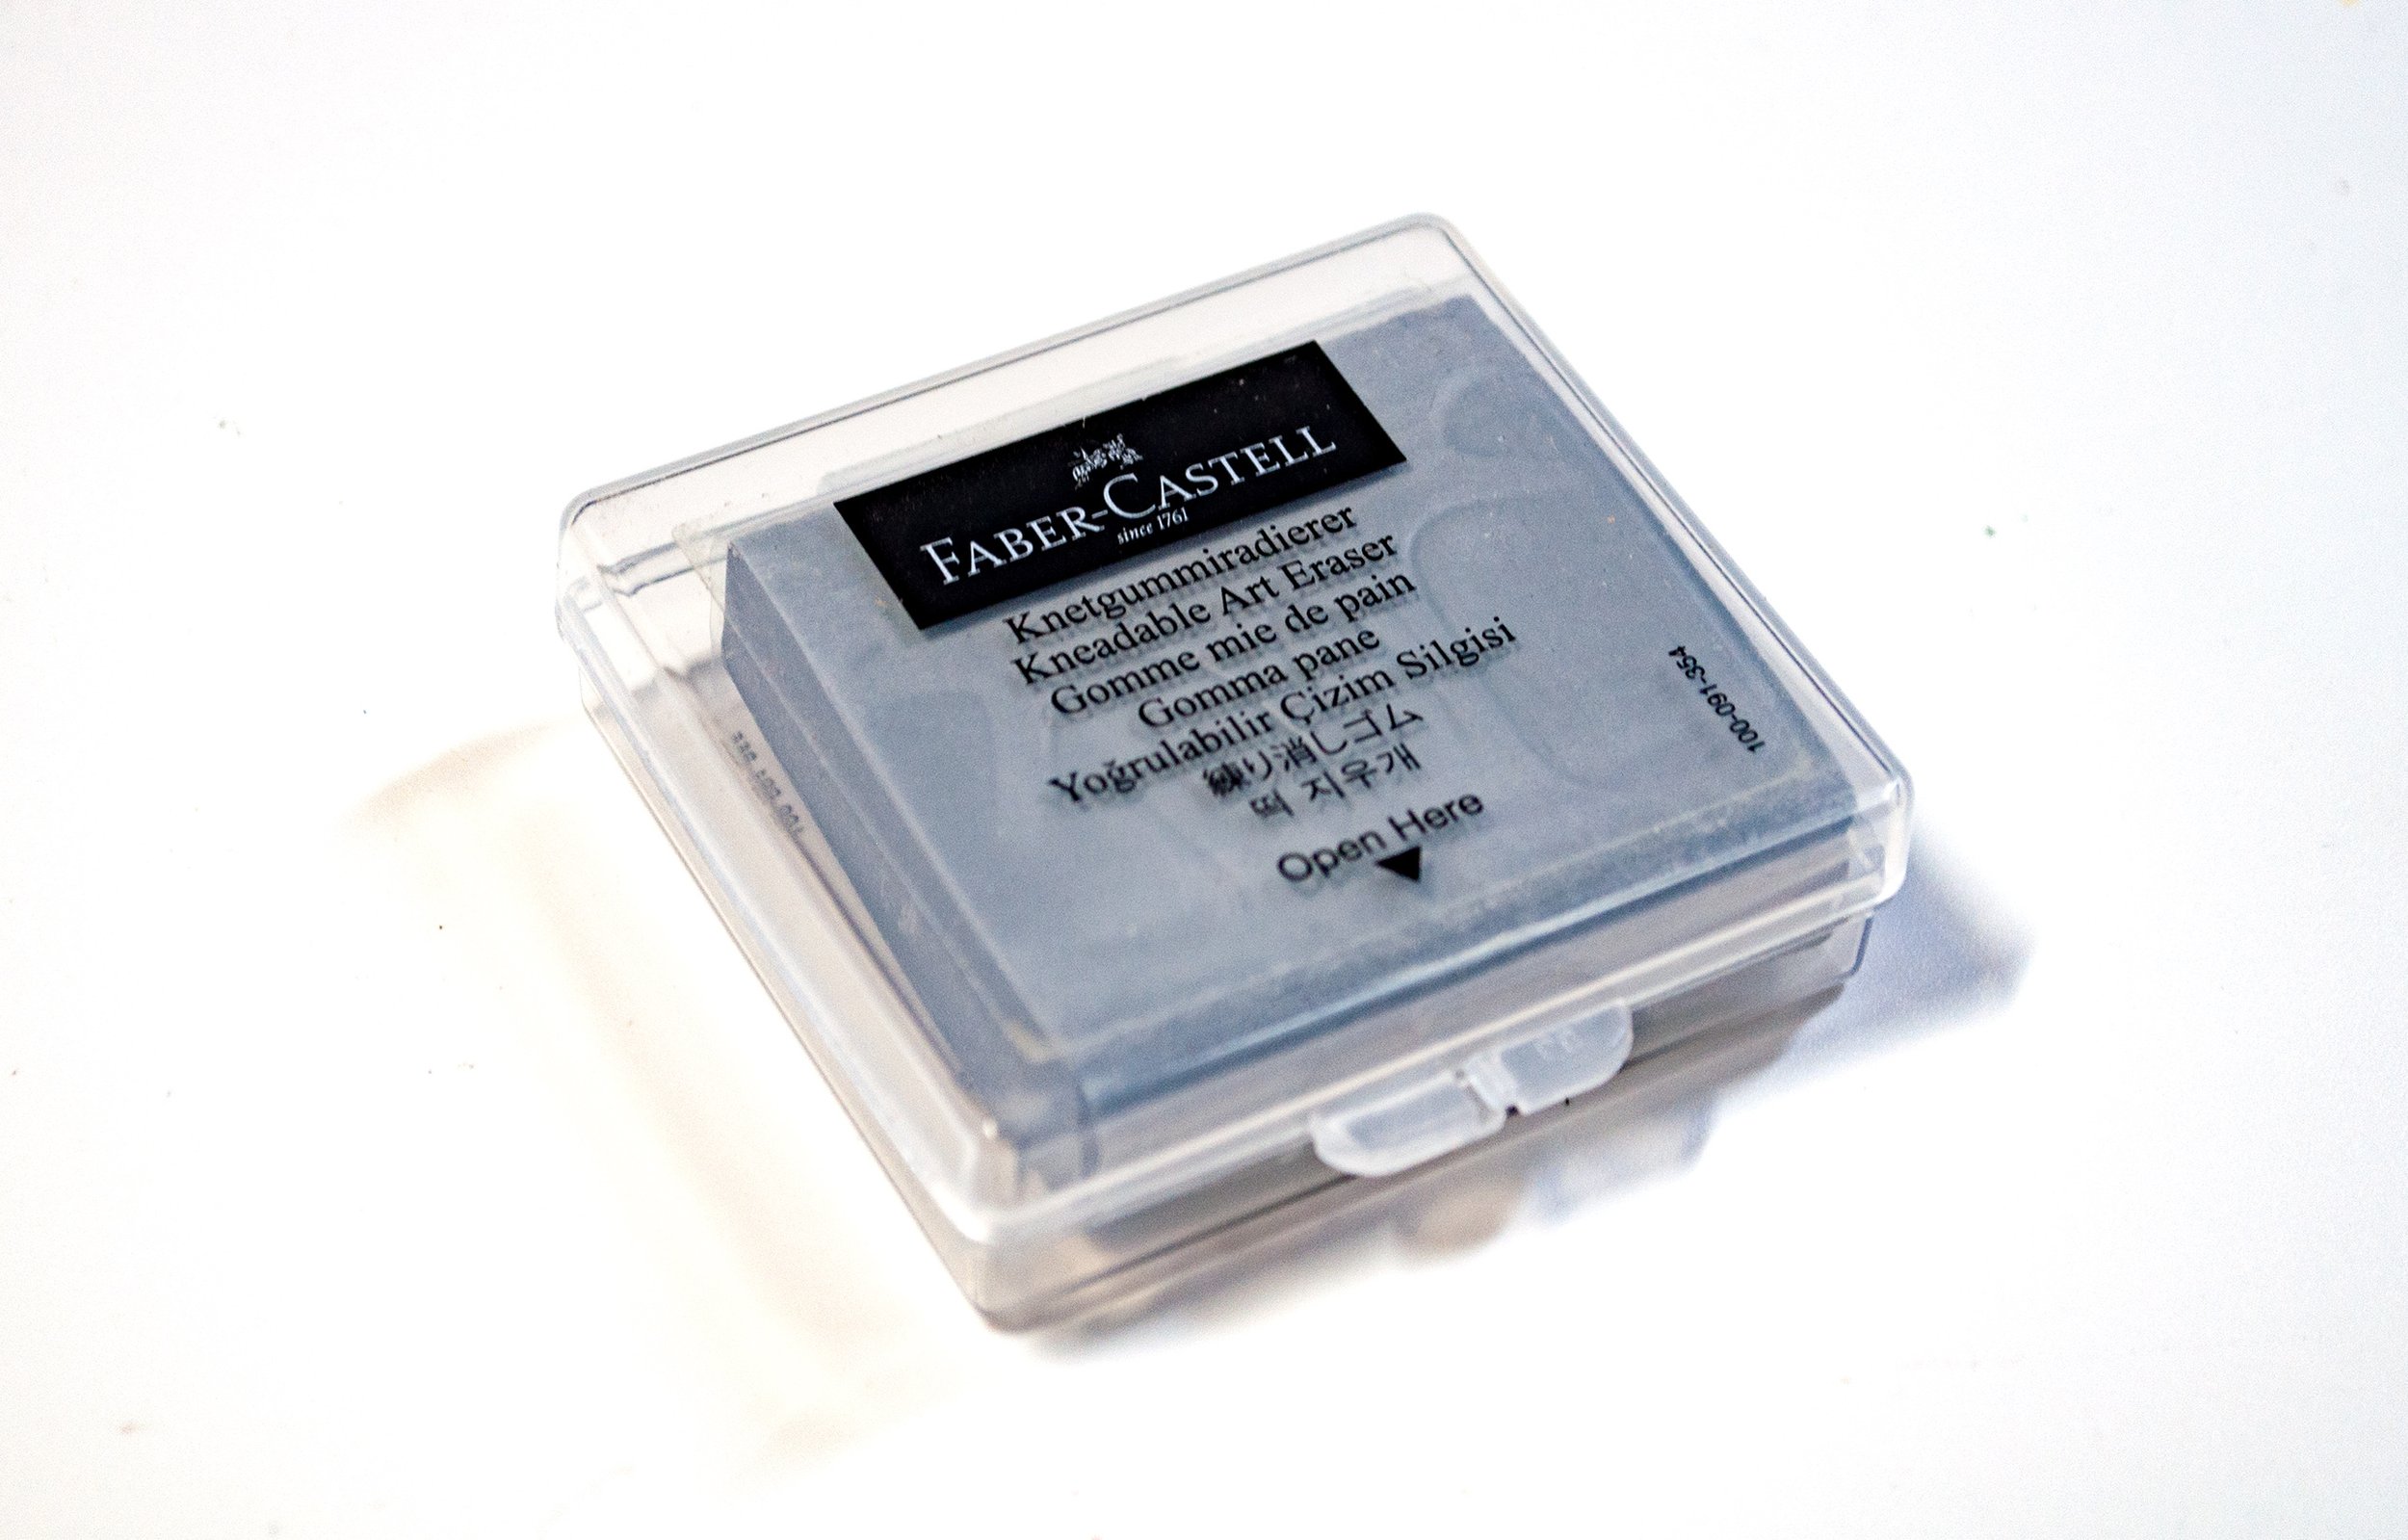 Faber Castell Kneadable Art Eraser - Dark Blue - Single Putty eraser in Box